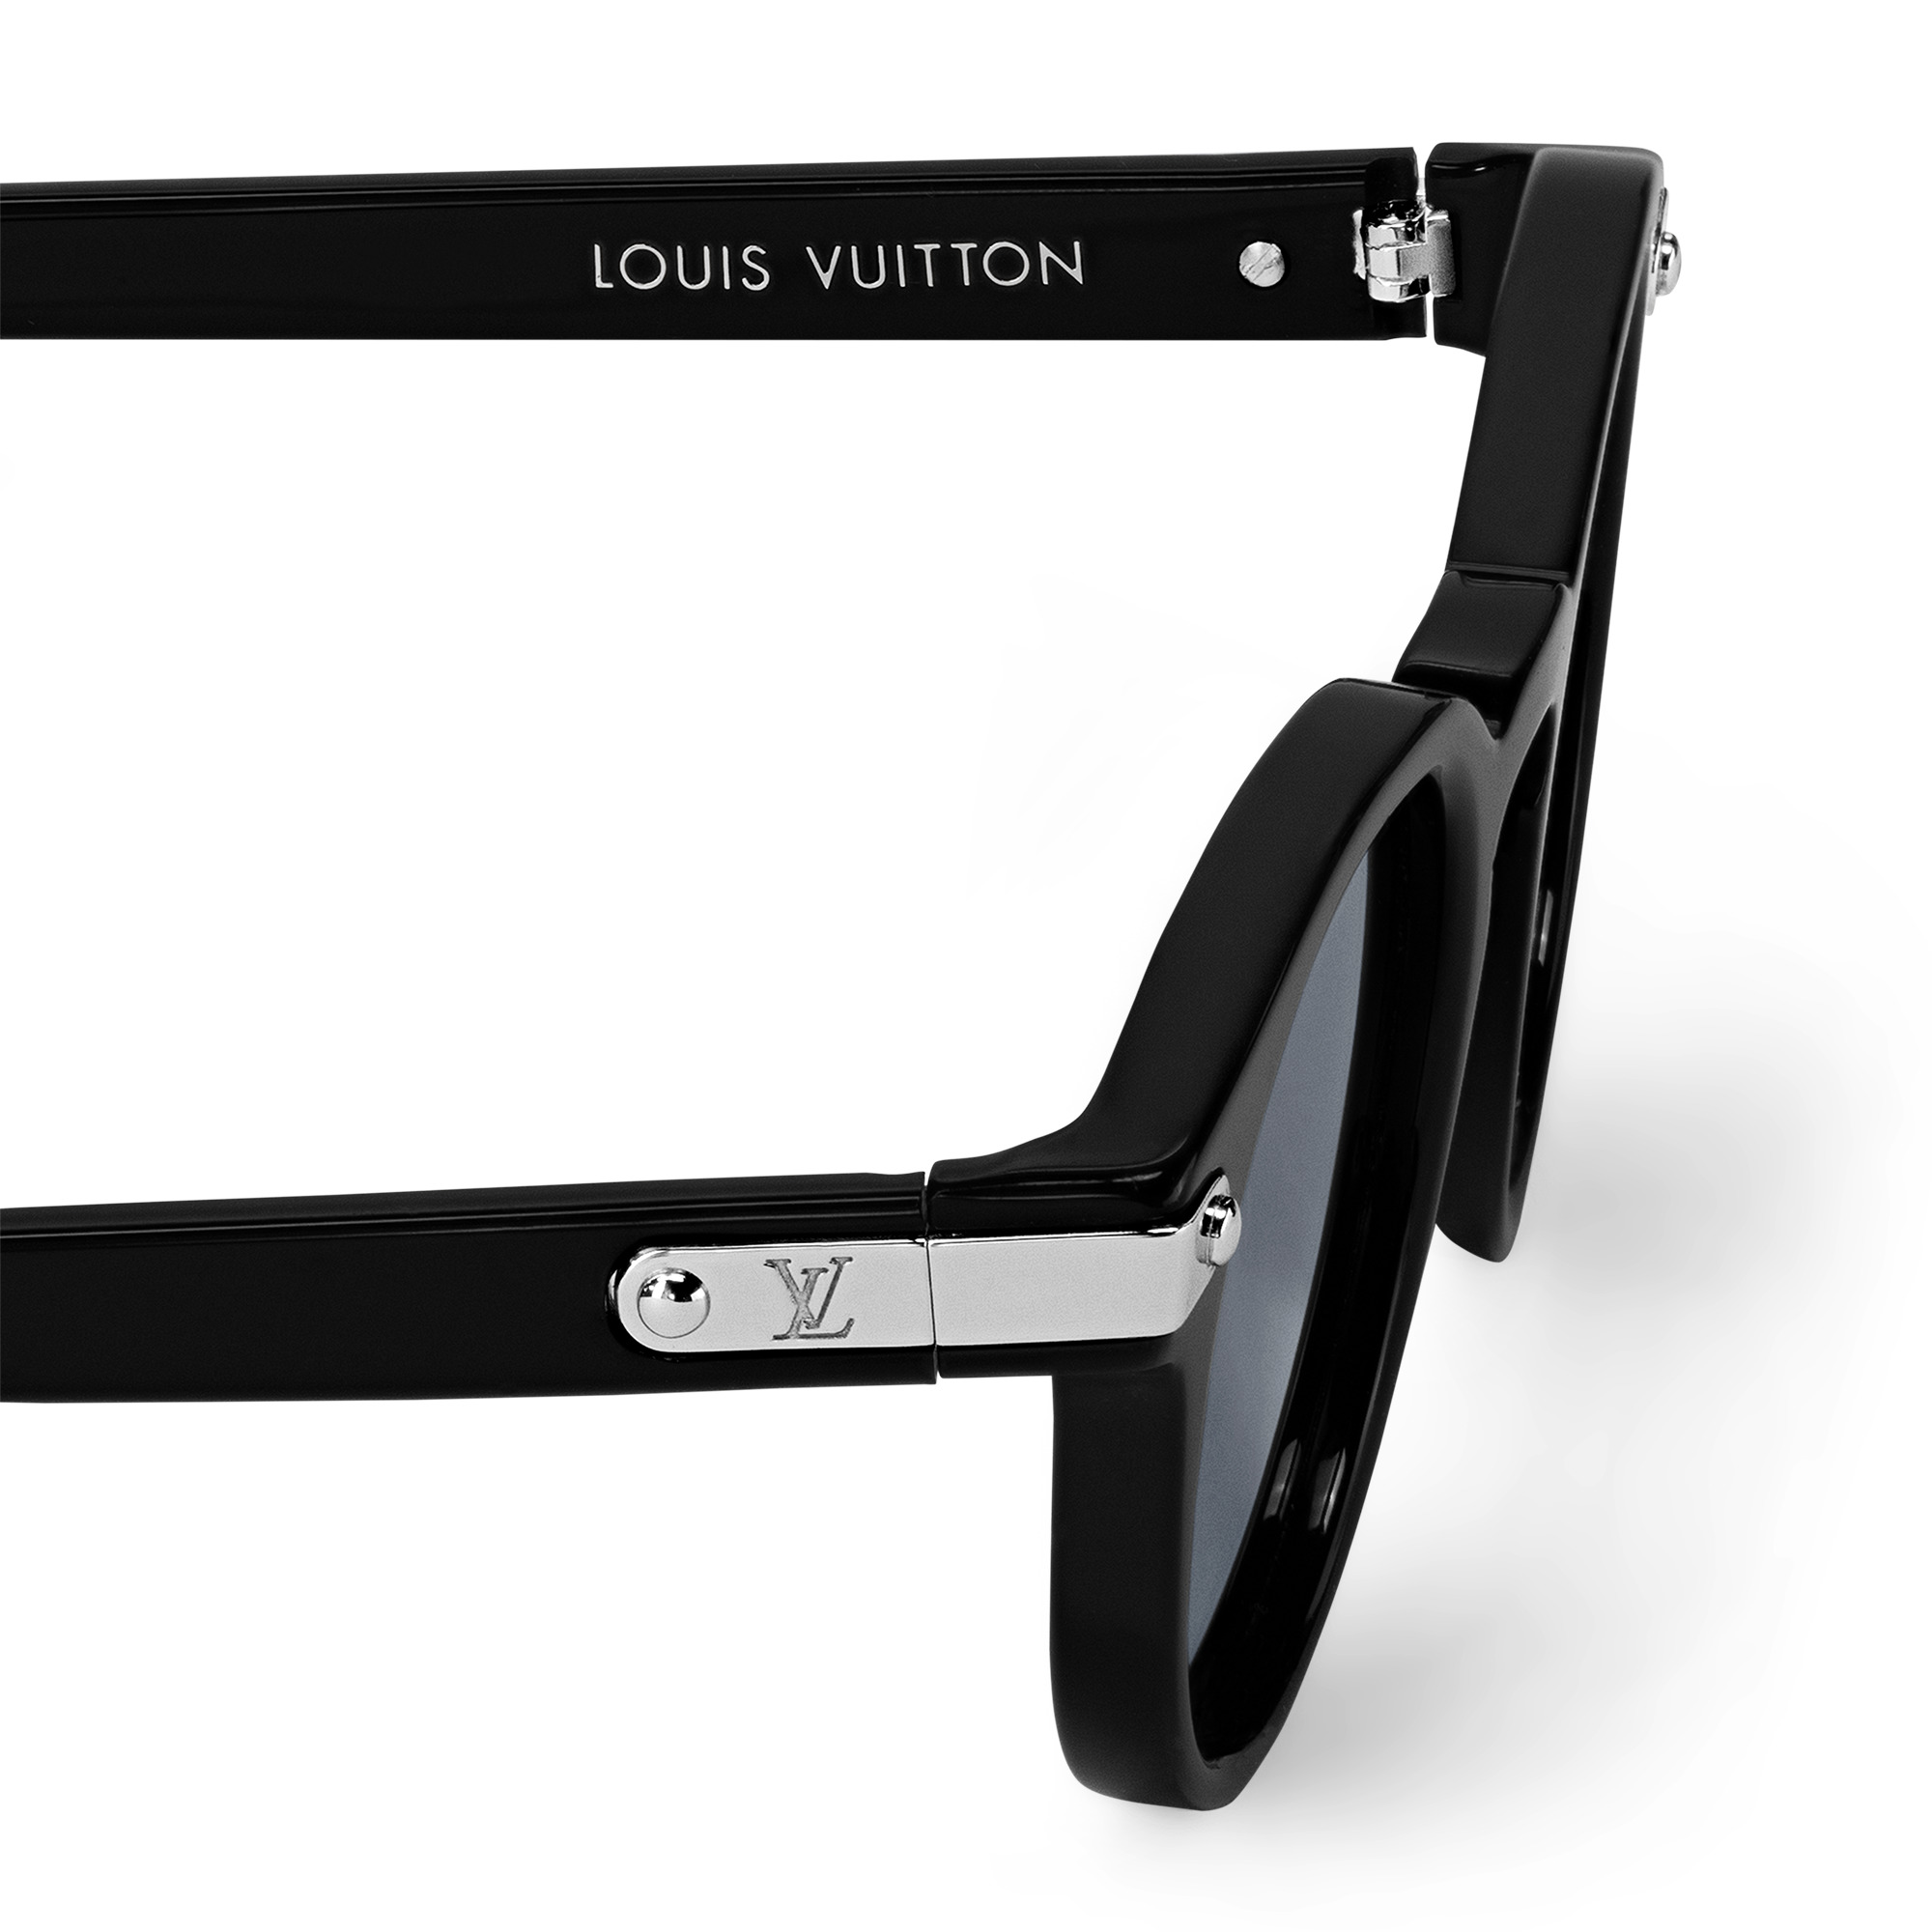 LV Signature Round Sunglasses - Size S - 5